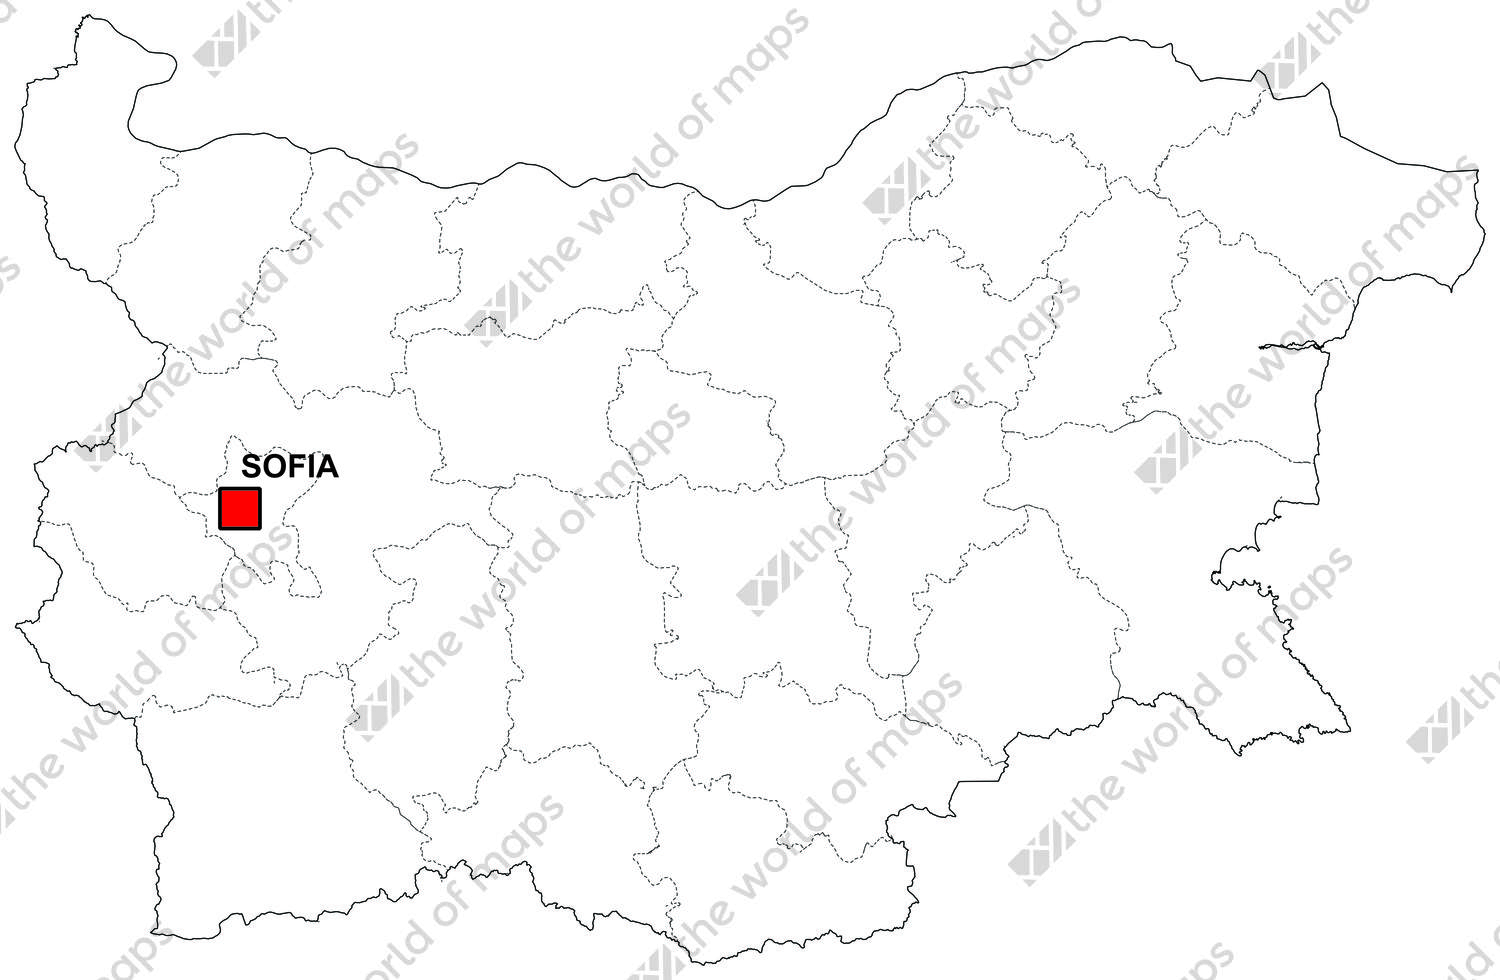 Digital map of Bulgaria (free)